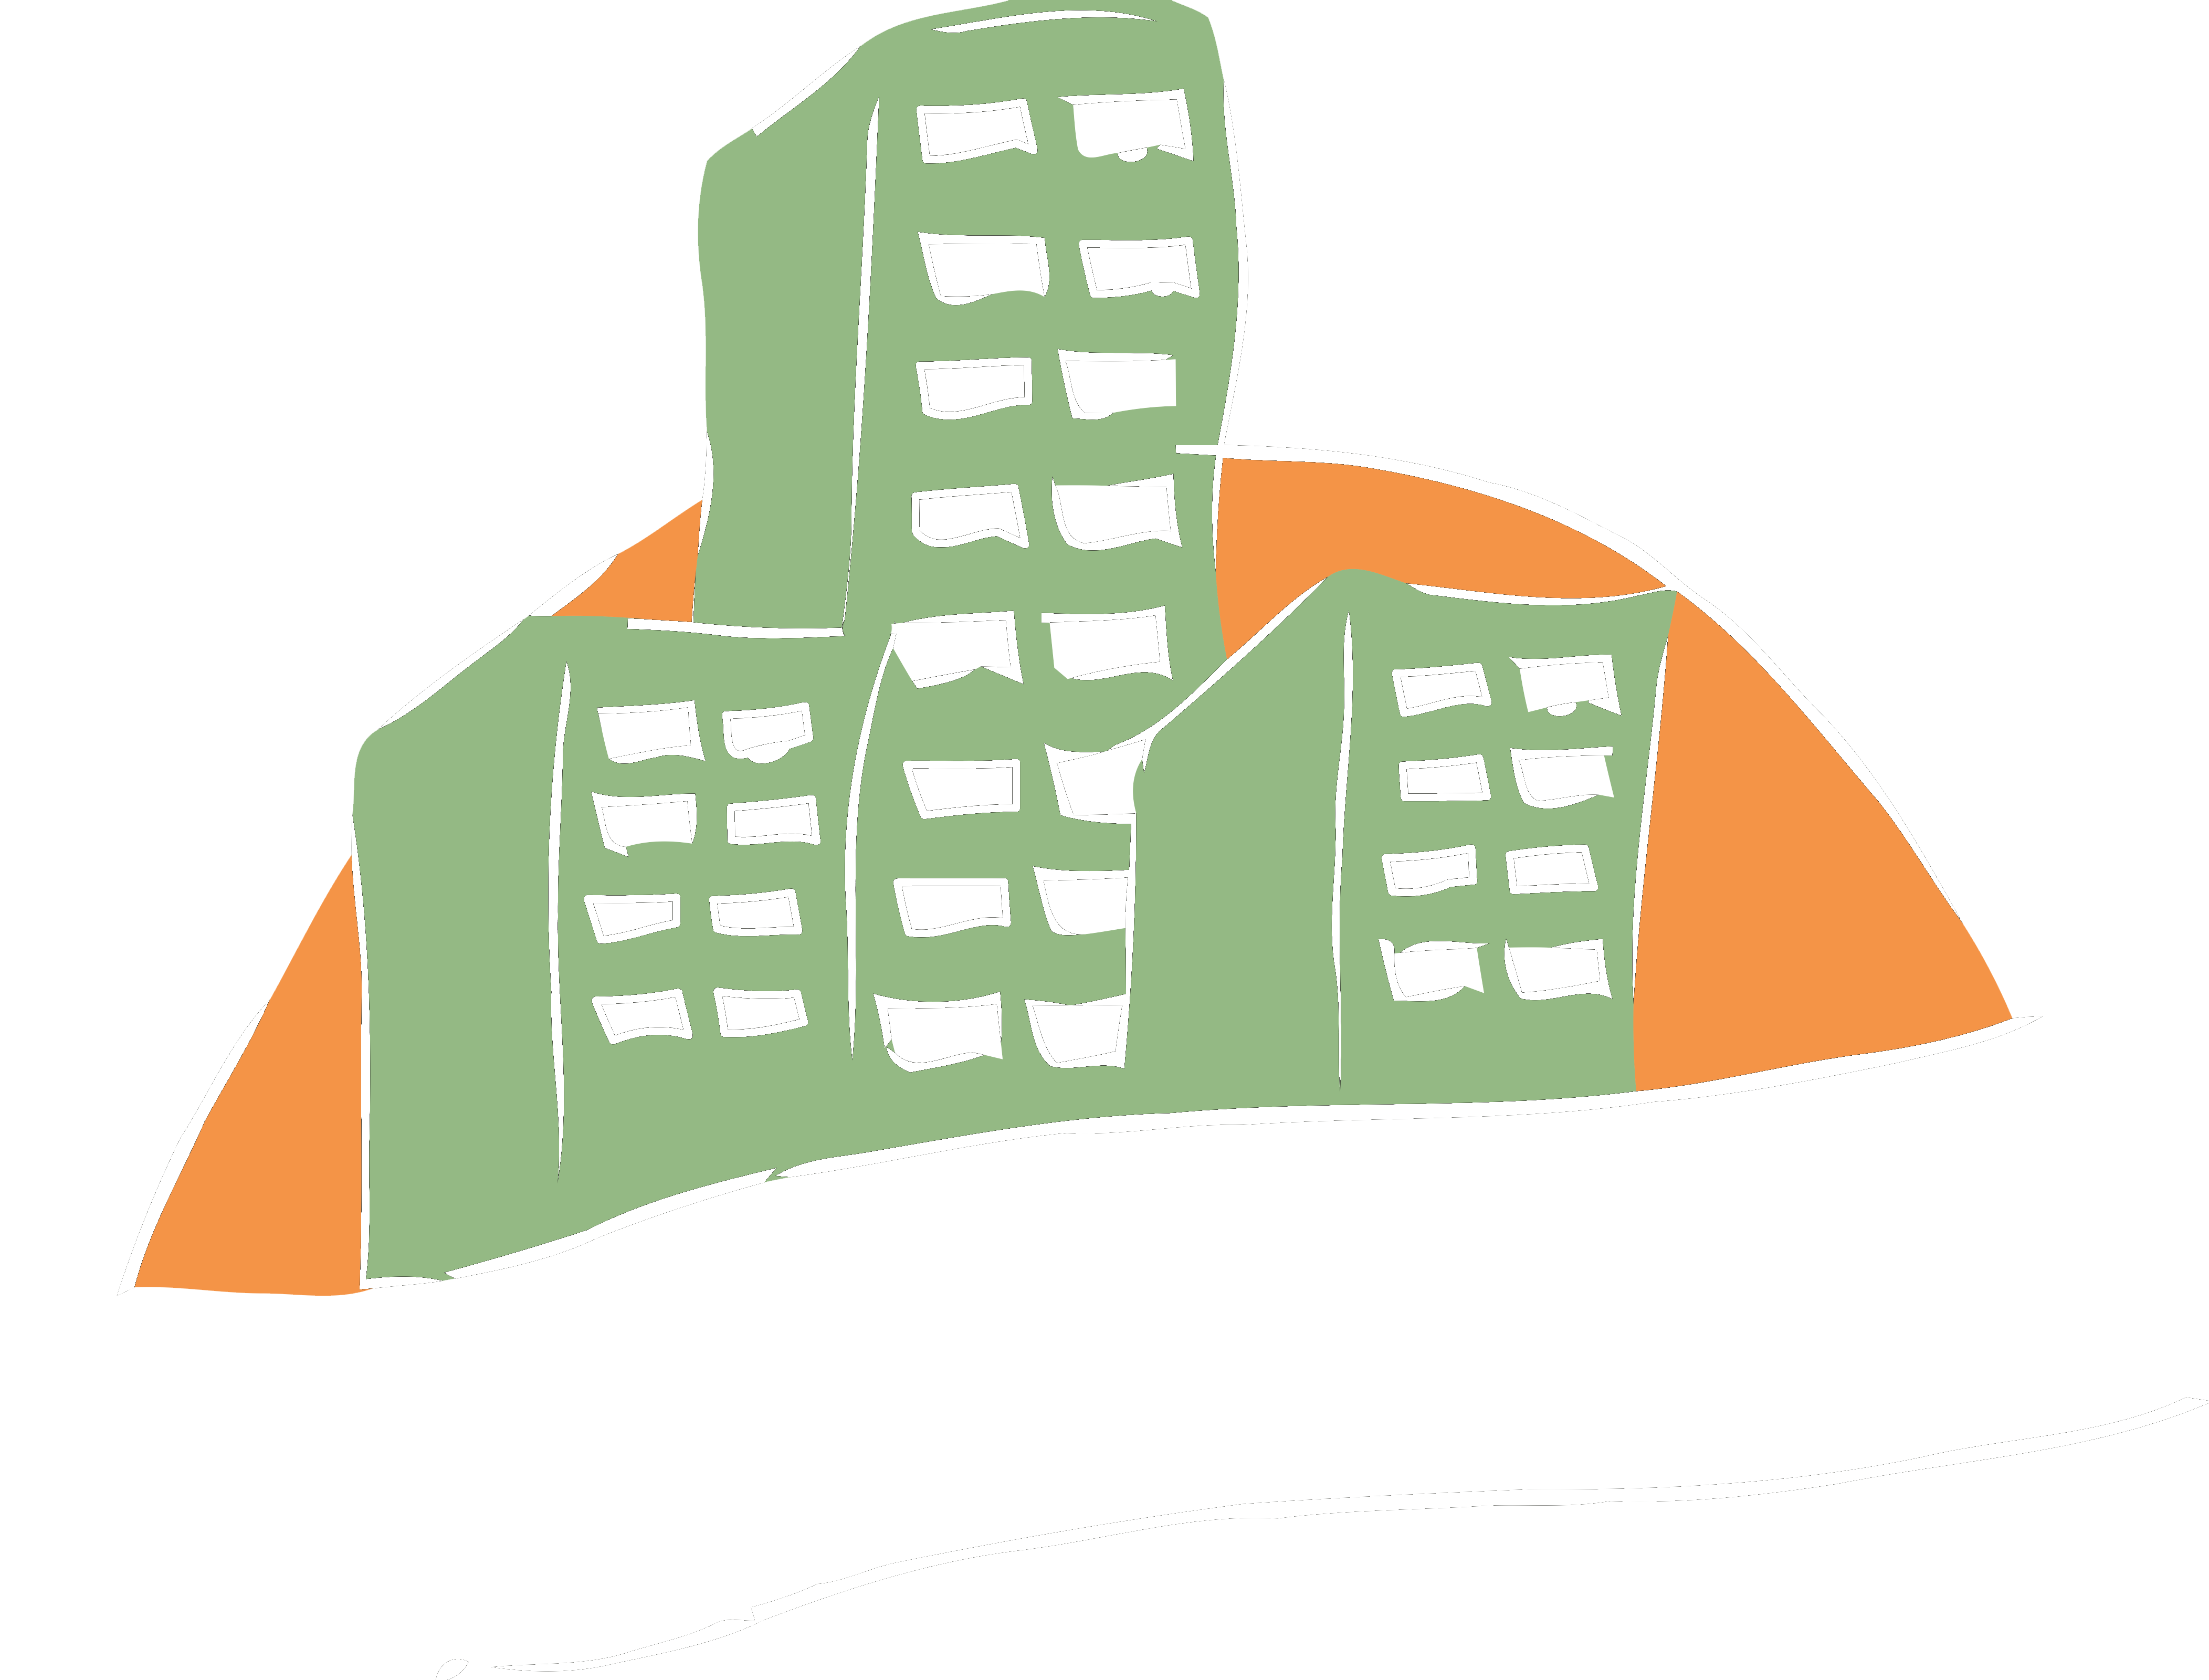 Logotipo de Comunidades Badajoz